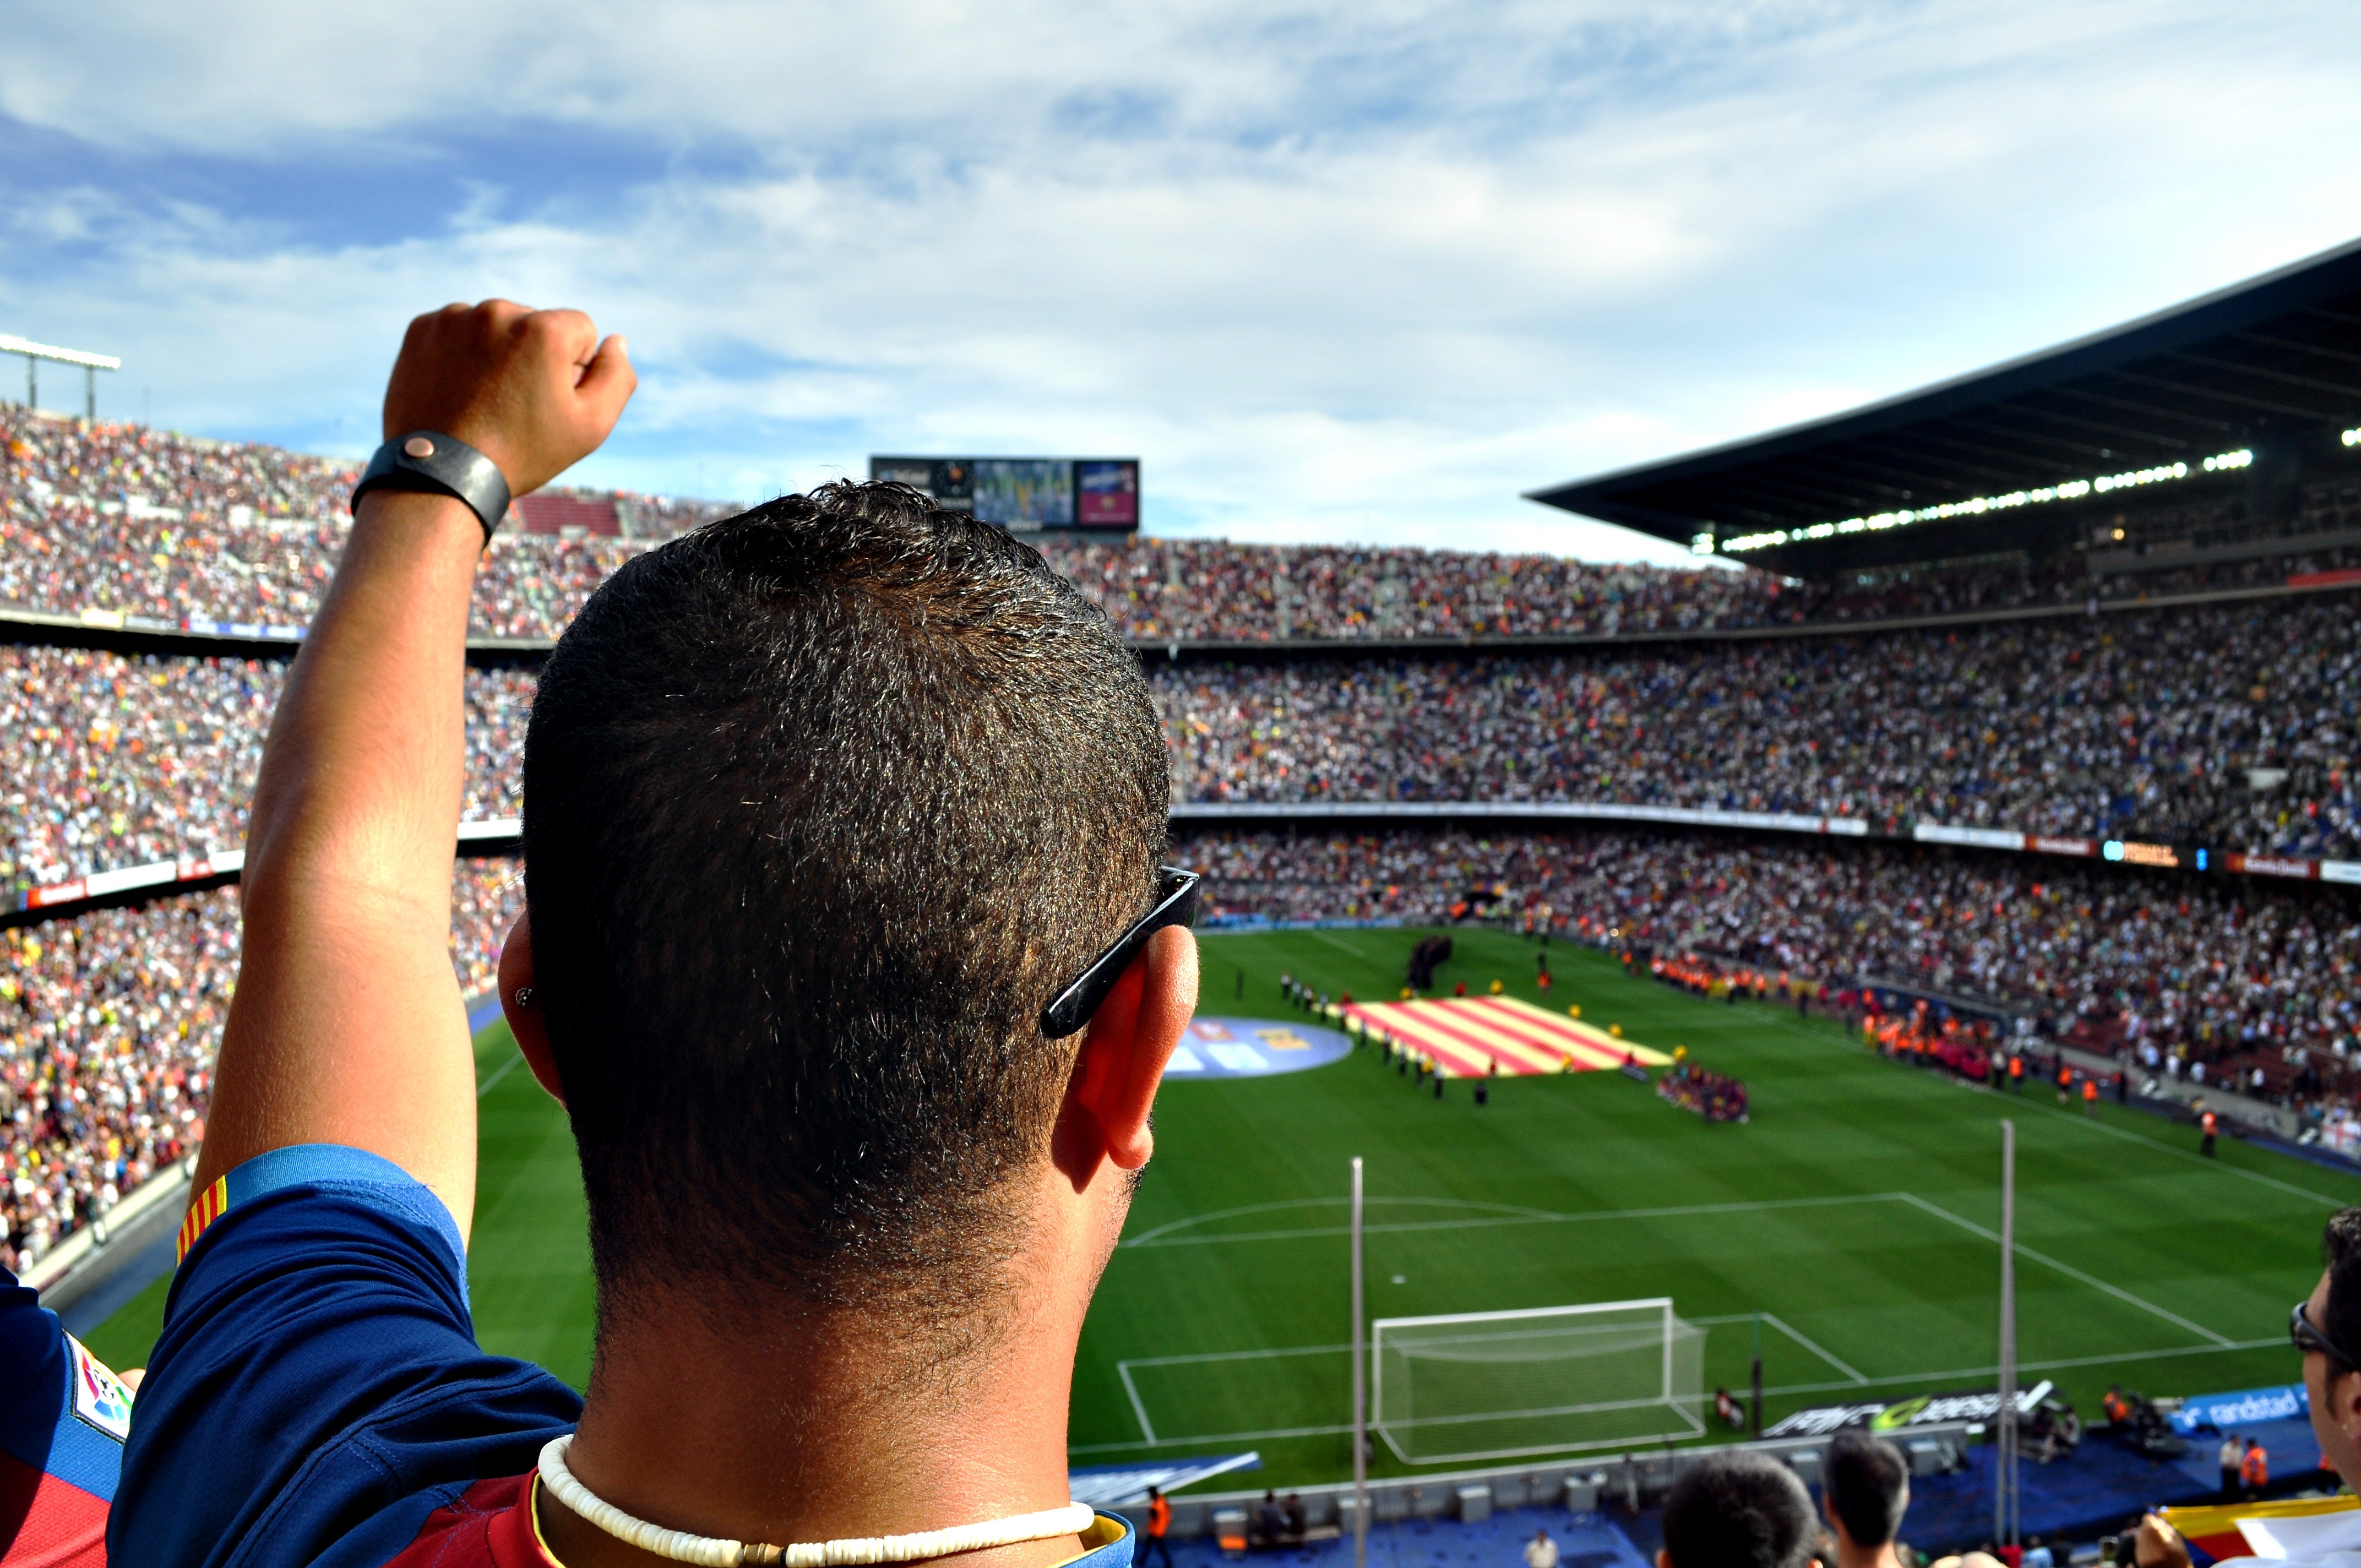 Varios equipos deportivos compiten por ser los más valiosos del mundo. (Foto Prensa Libre: Pixabay)